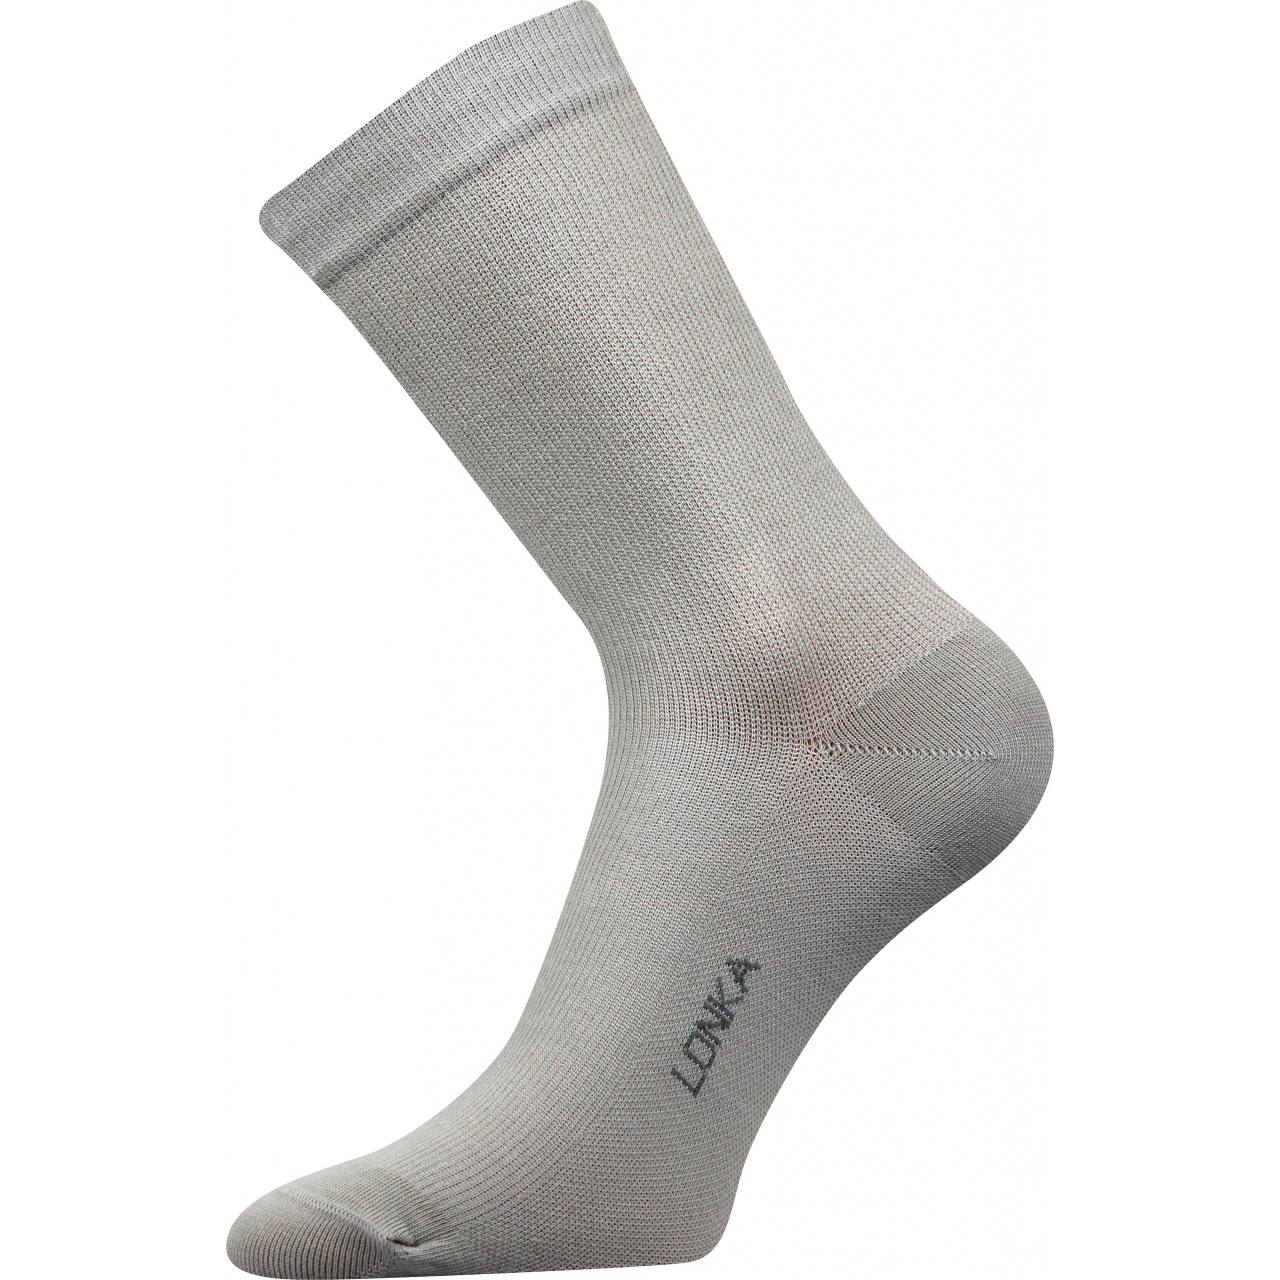 Ponožky kompresní Lonka Kooper - světle šedé, 39-42